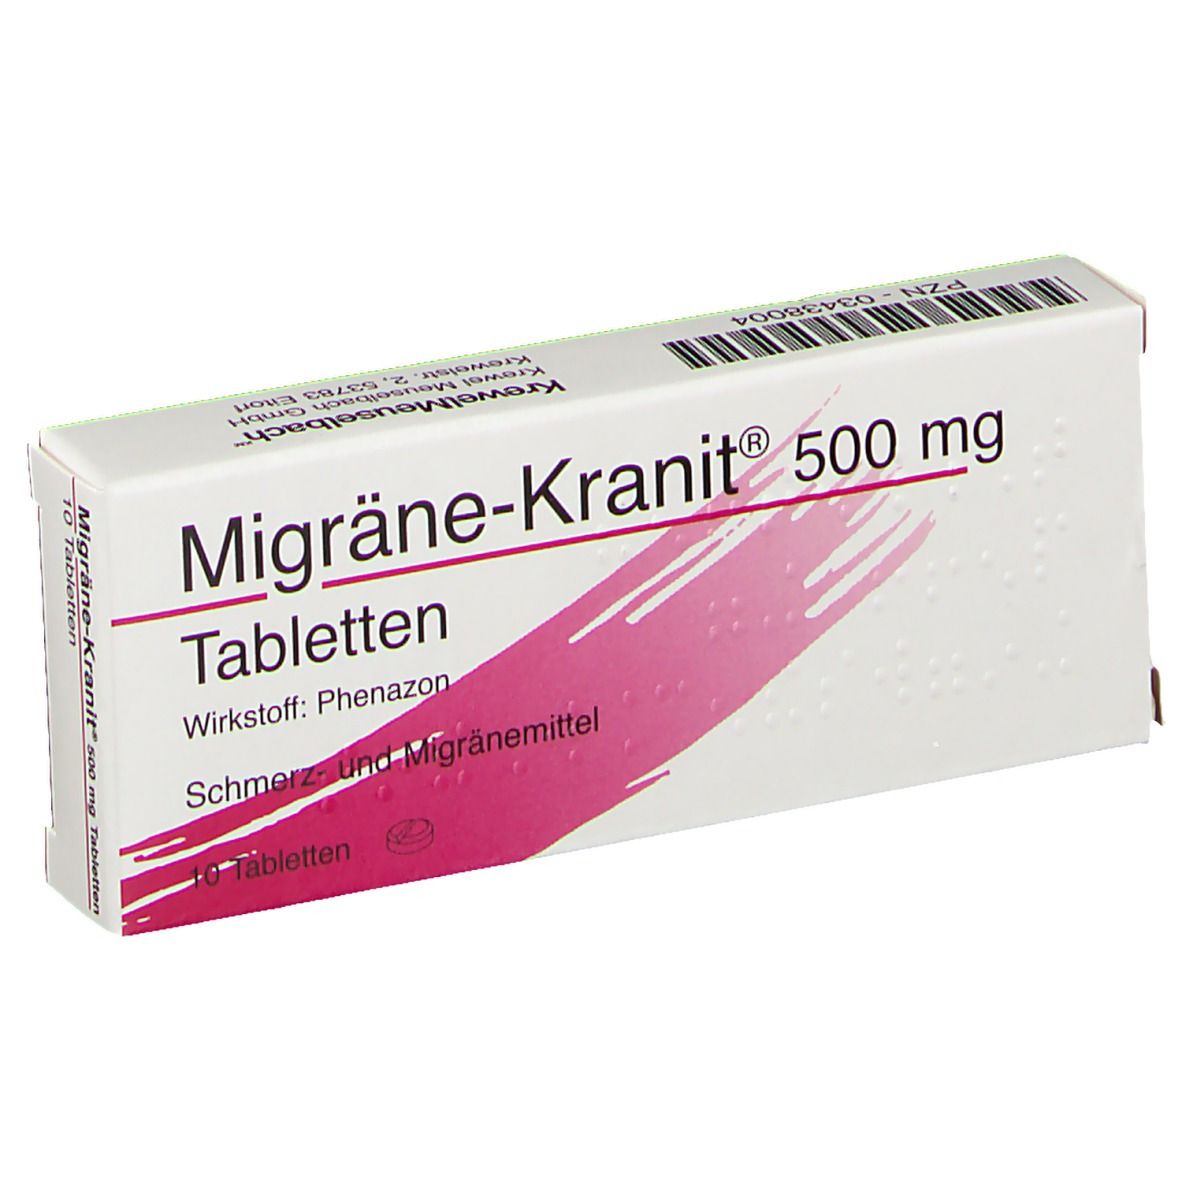 Erfahrungen Und Meinungen Zu Migrane Kranit 500 Mg Tabletten Shop Apotheke Com